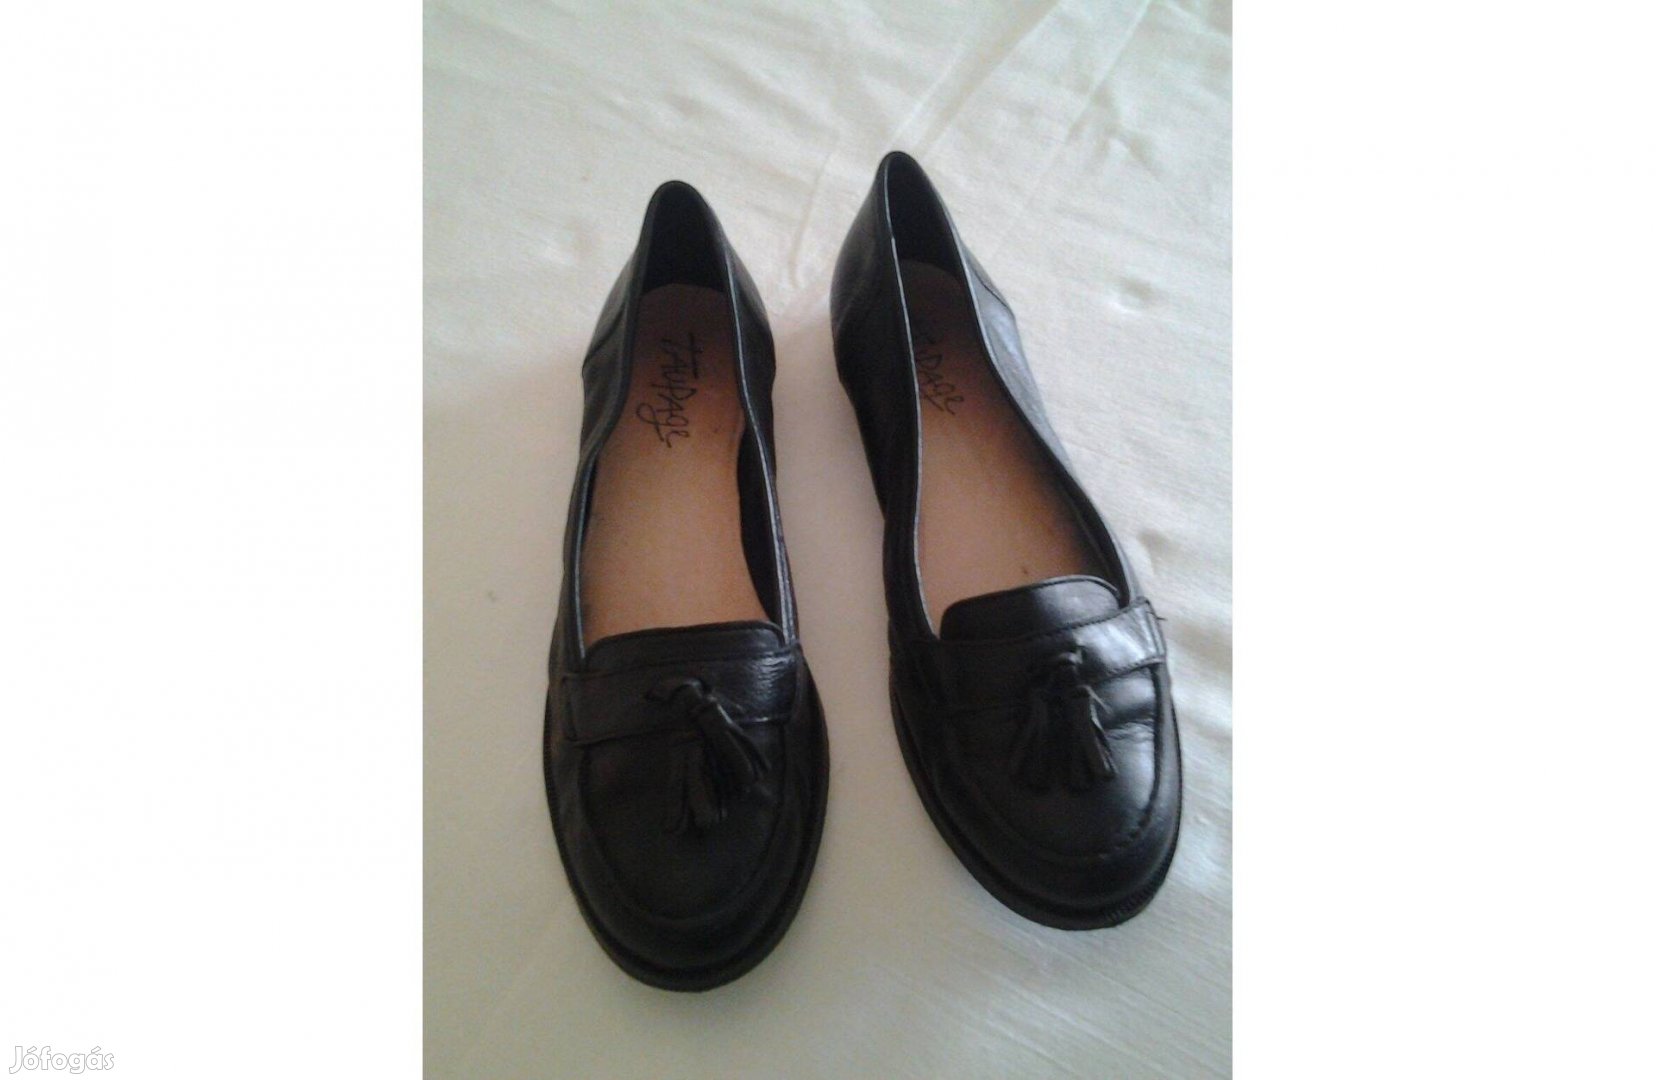 Új női bőr cipő, 36 - 36,5 méret, fekete, Taupage márka